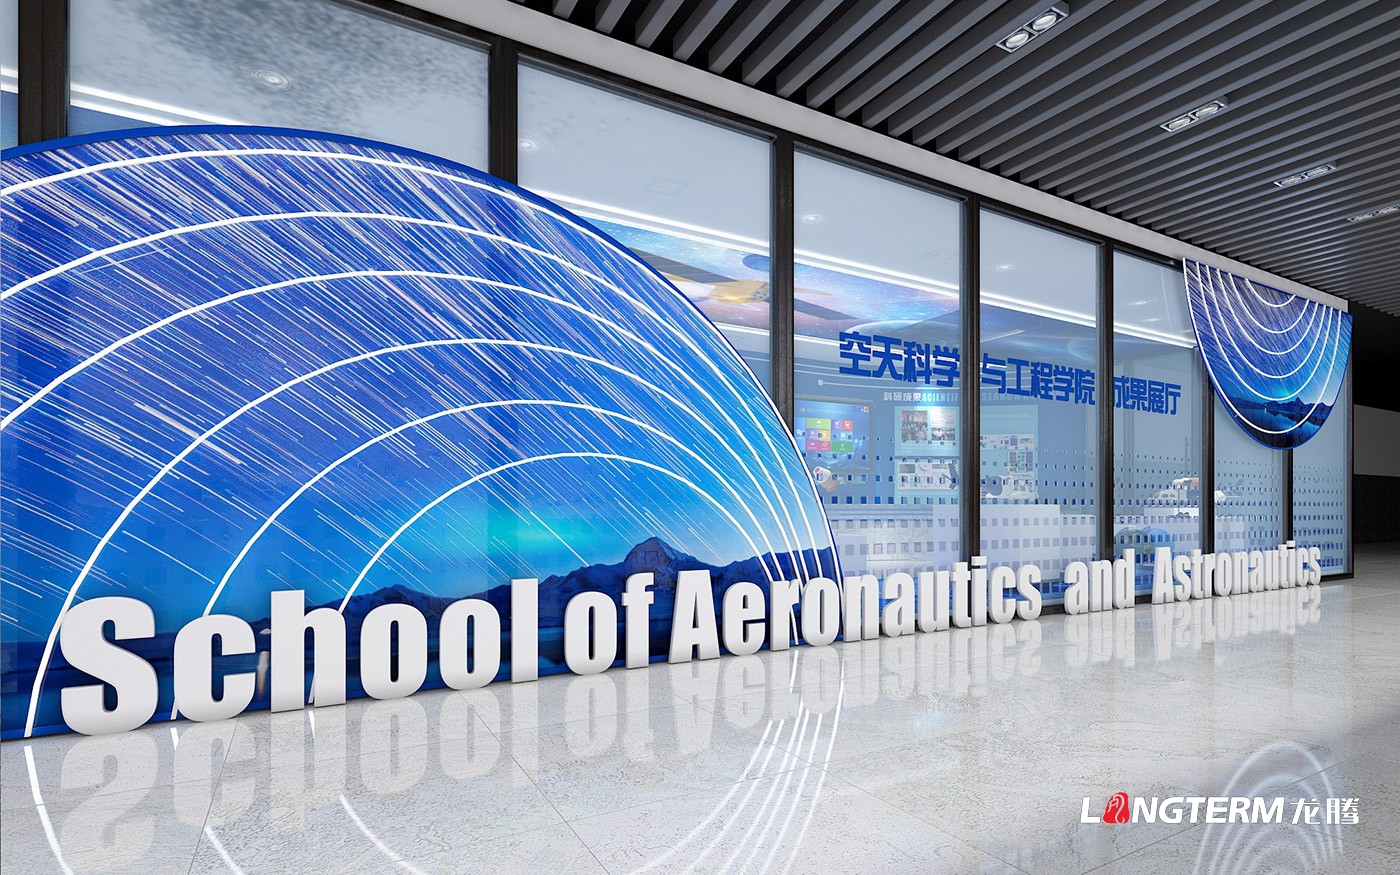 四川大學空天科學與工程學院成果展示廳設計制作施工一體化_航天科技展館策劃設計